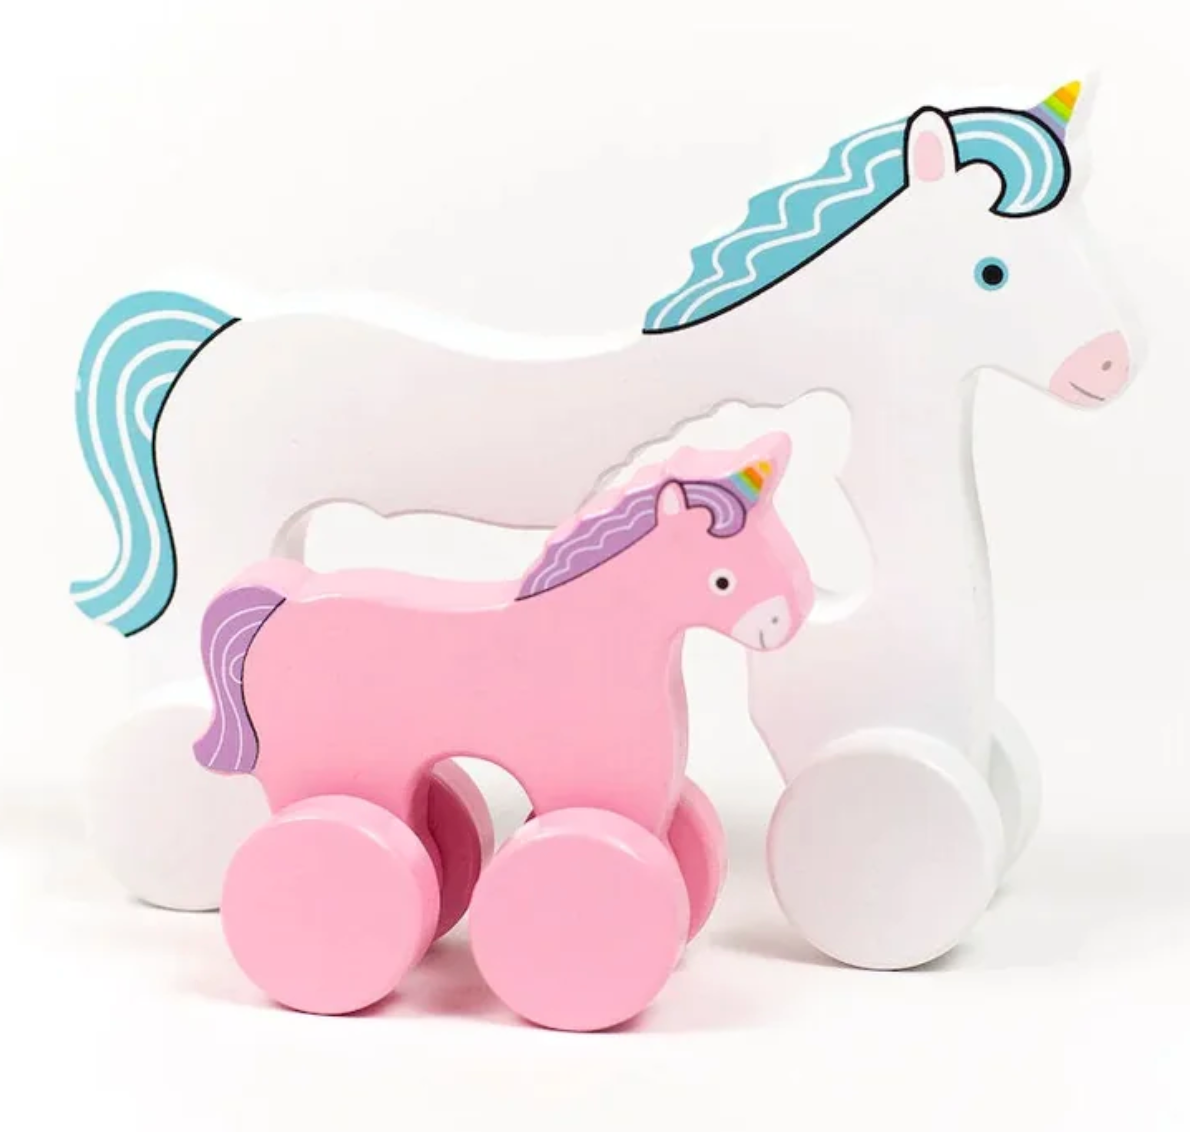 Big & Little Unicorn - Push Toy